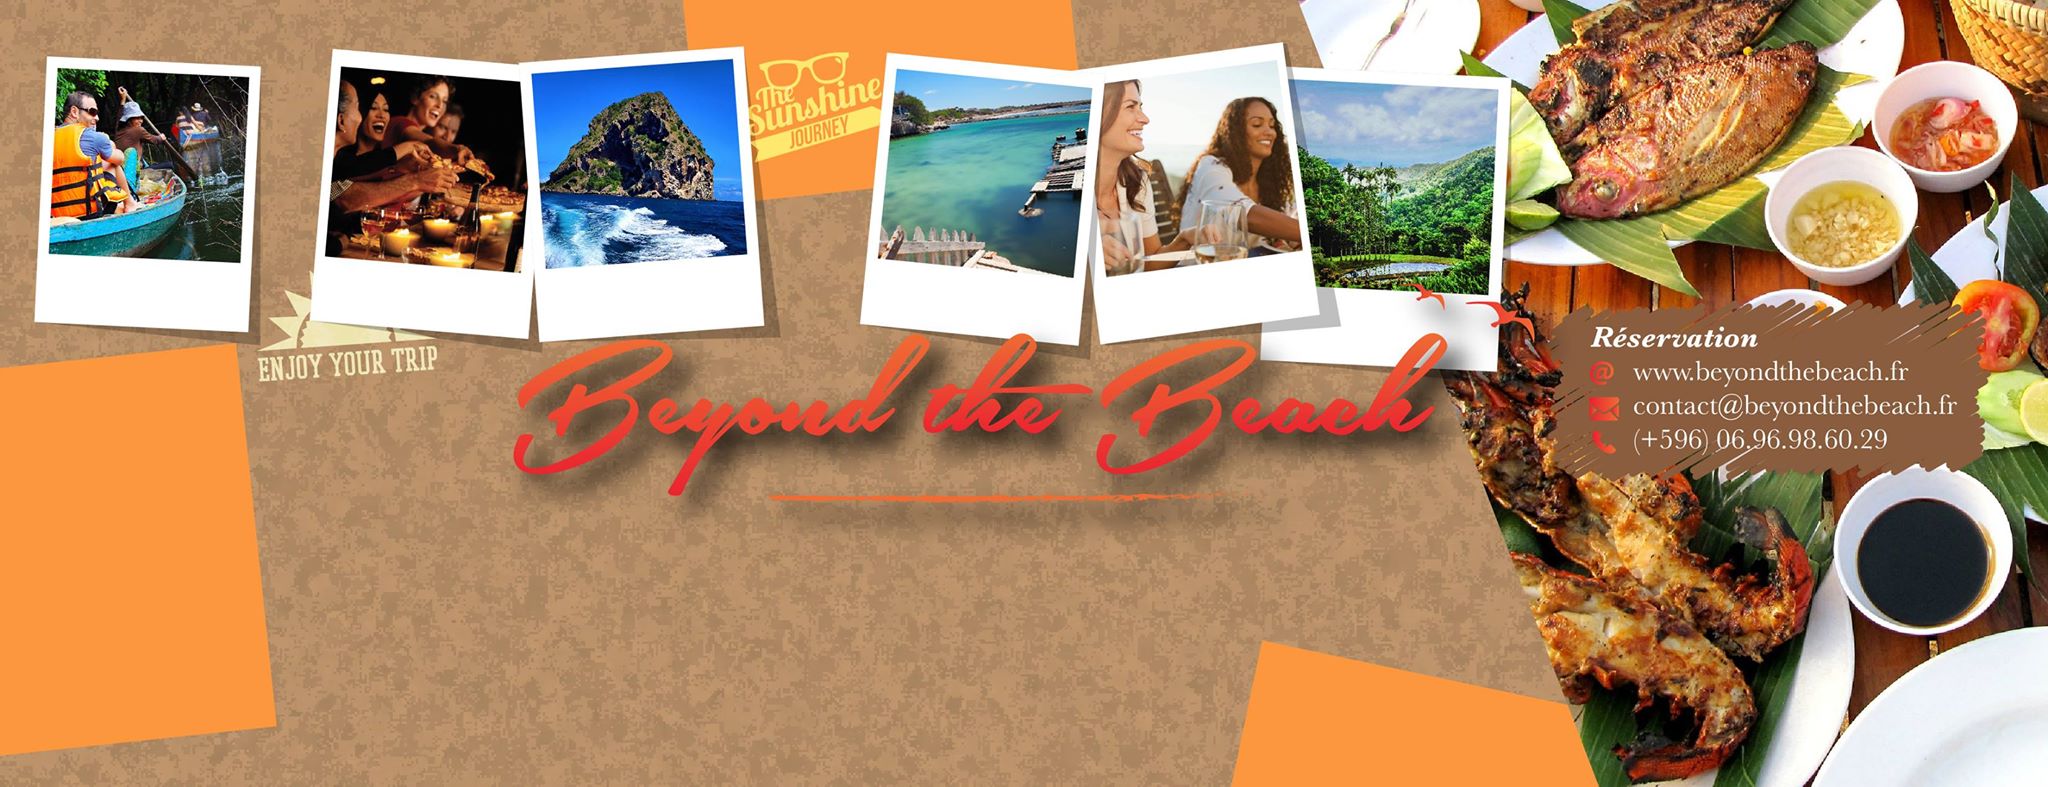 Tourisme en Outre-mer : &laquo;&nbsp;Beyond the Beach&nbsp;&raquo;, un concept pour sortir des sentiers battus